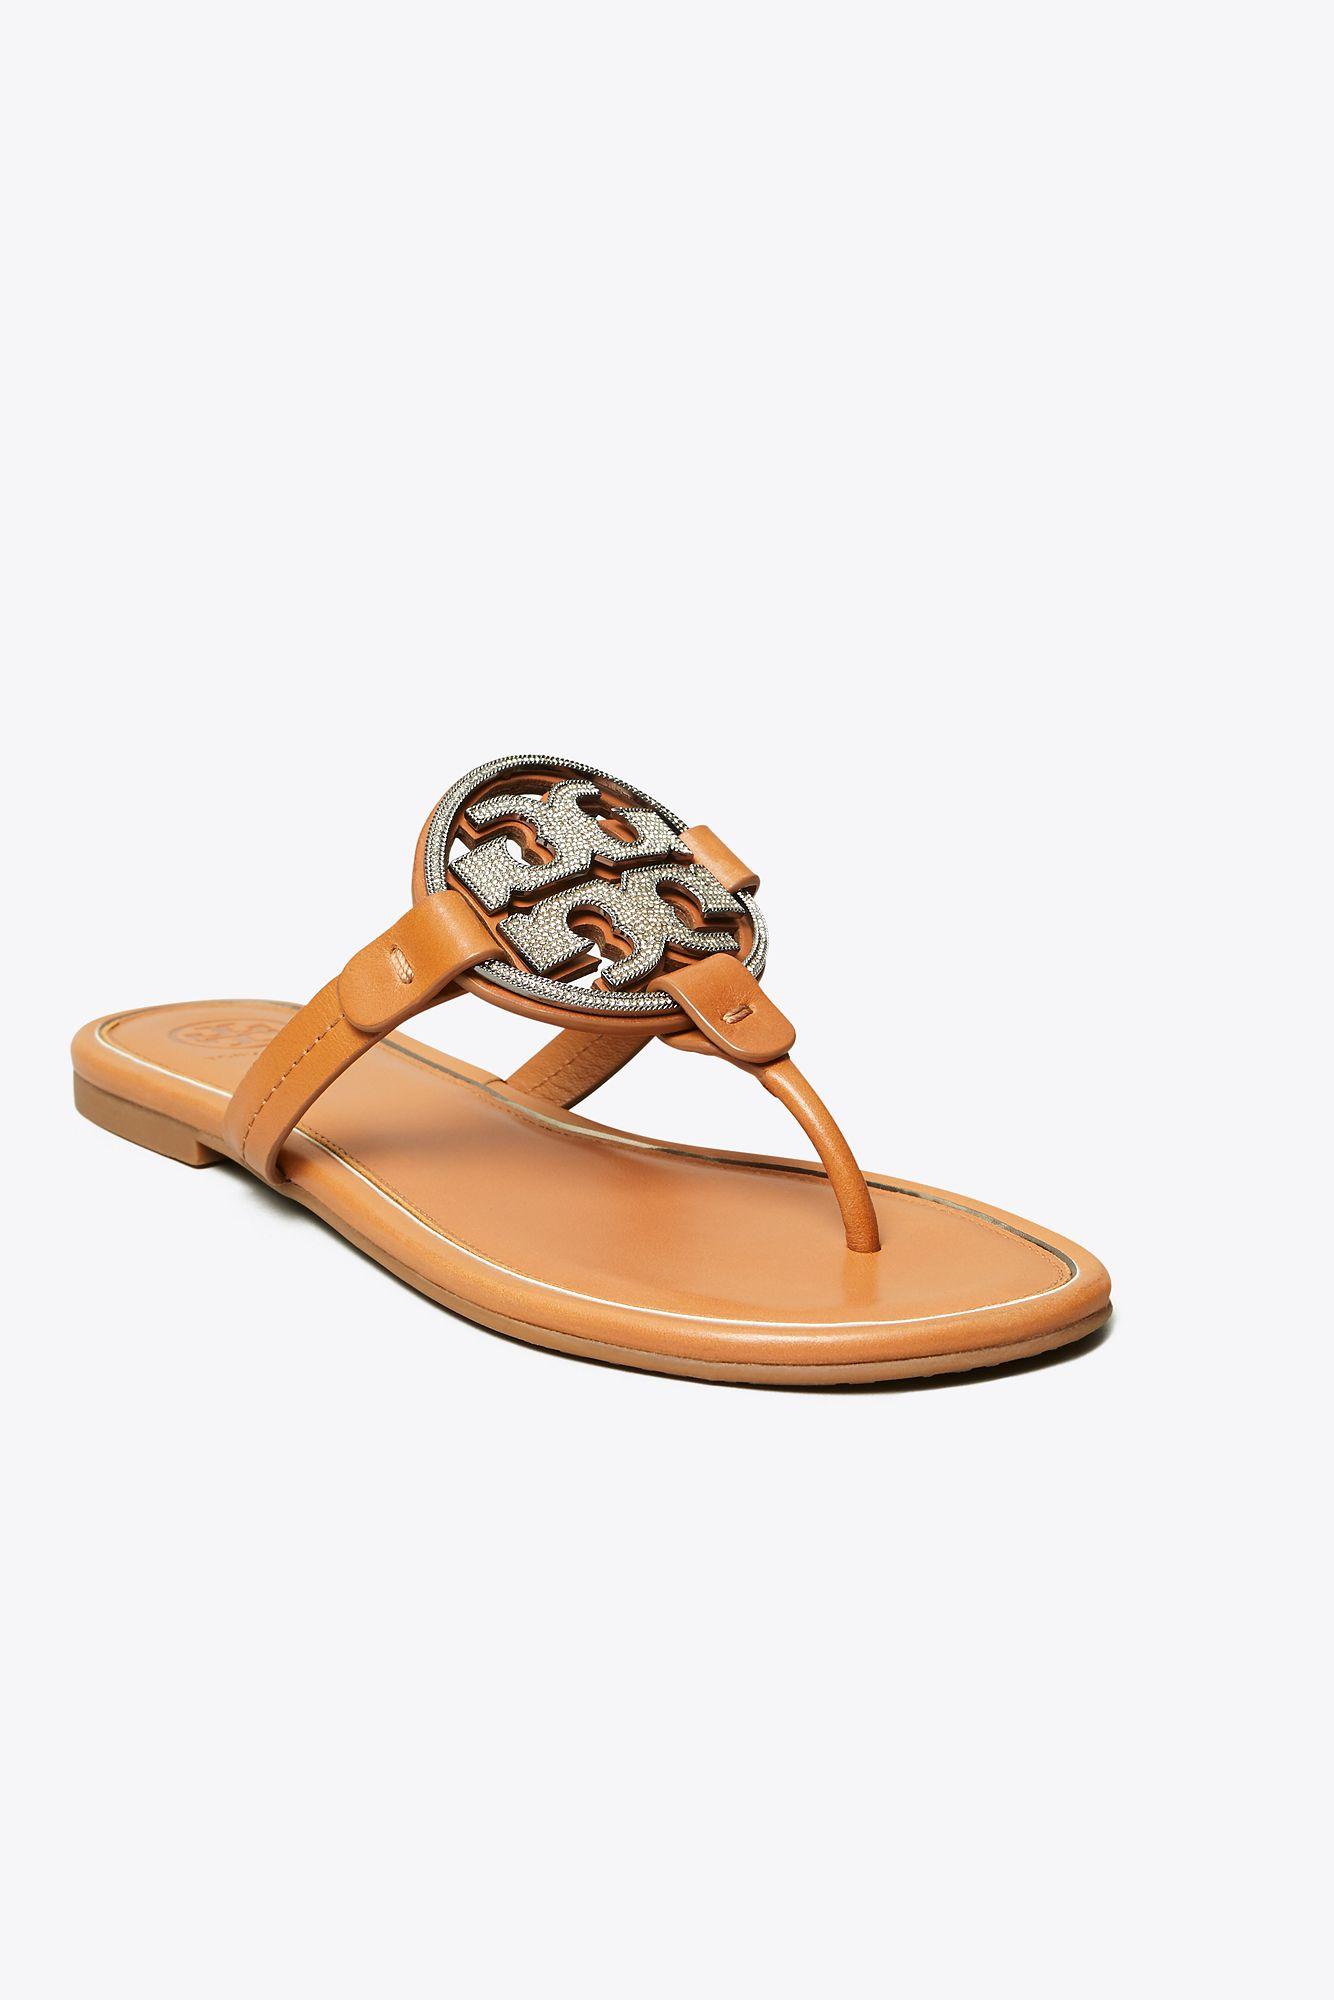 tory burch miller sandals tan